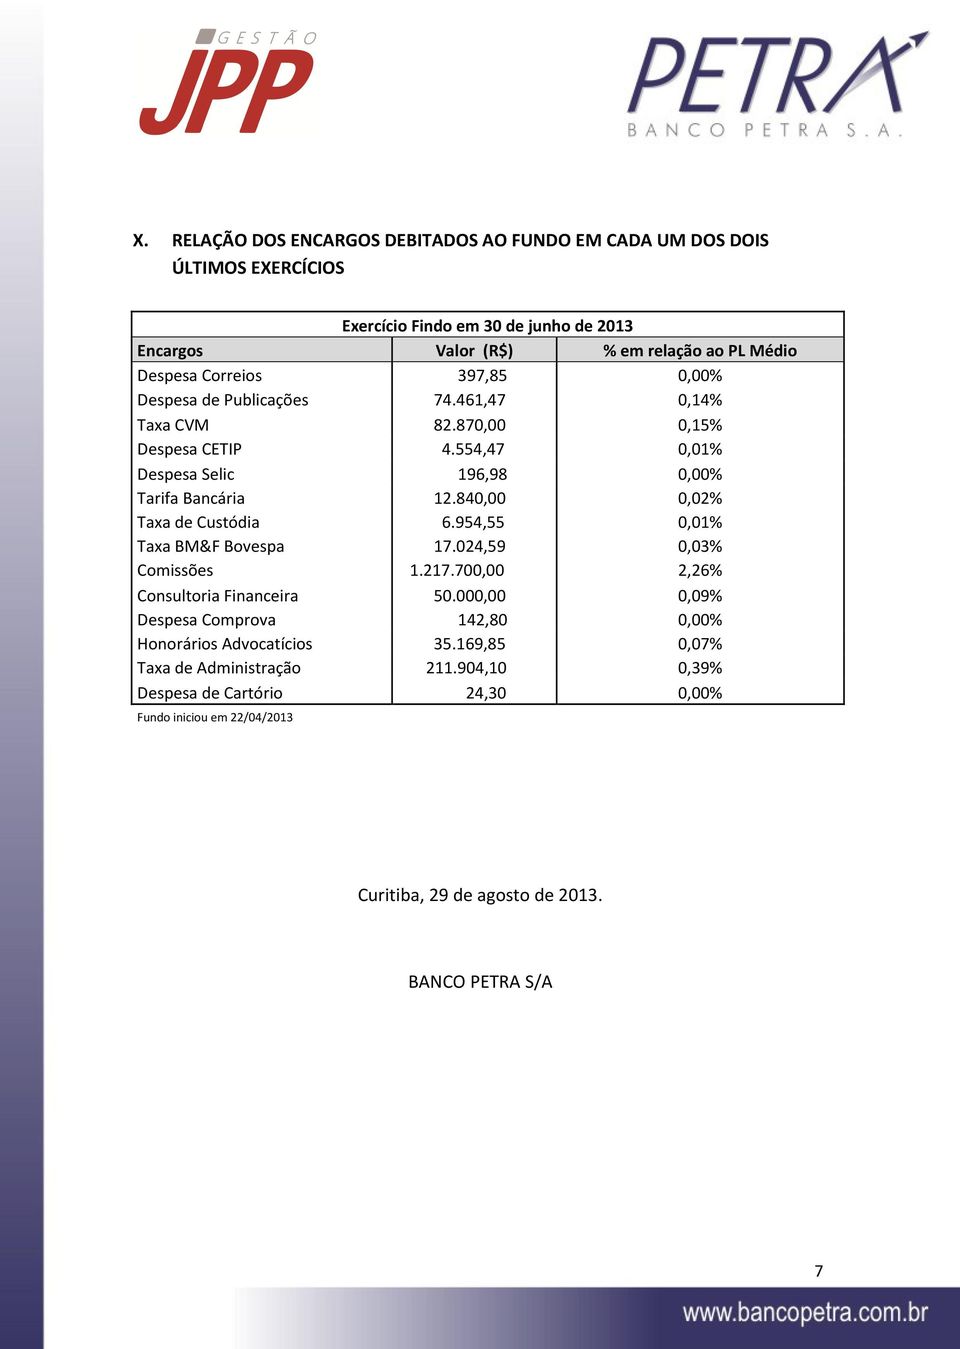 840,00 0,02% Taxa de Custódia 6.954,55 0,01% Taxa BM&F Bovespa 17.024,59 0,03% Comissões 1.217.700,00 2,26% Consultoria Financeira 50.